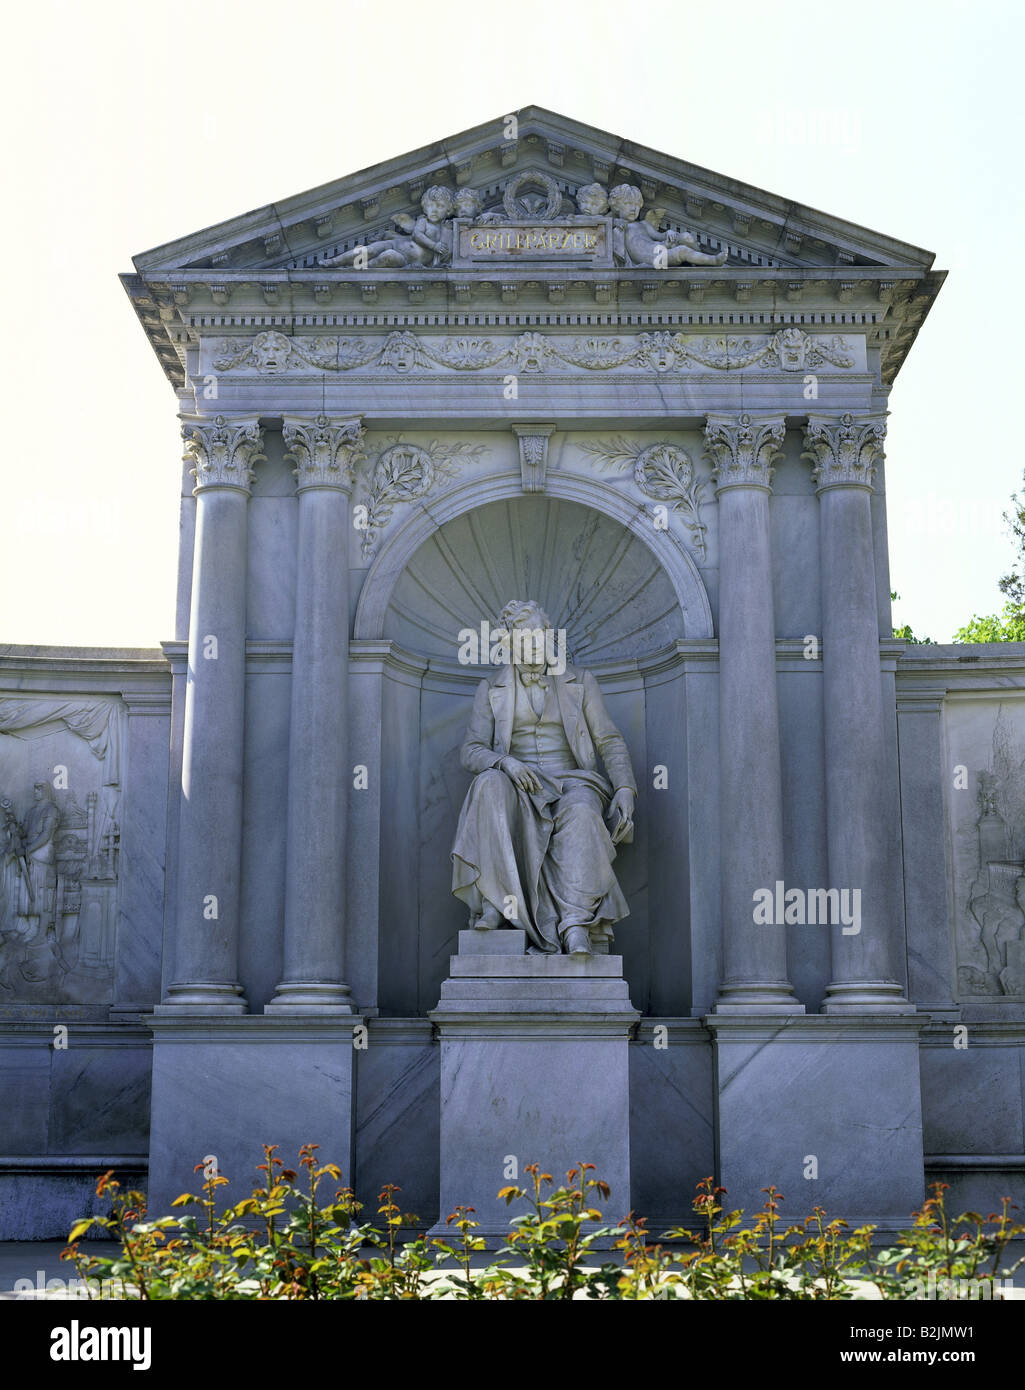 Grillparzer, Franz, 15.1.1791 - 21.1.1872, Austrian writer, memorial, statue, built: 1889, sculptor: Carl Kundmann, conception by Rudolf Weyr, Volksgarten, Vienna, Austria, Stock Photo